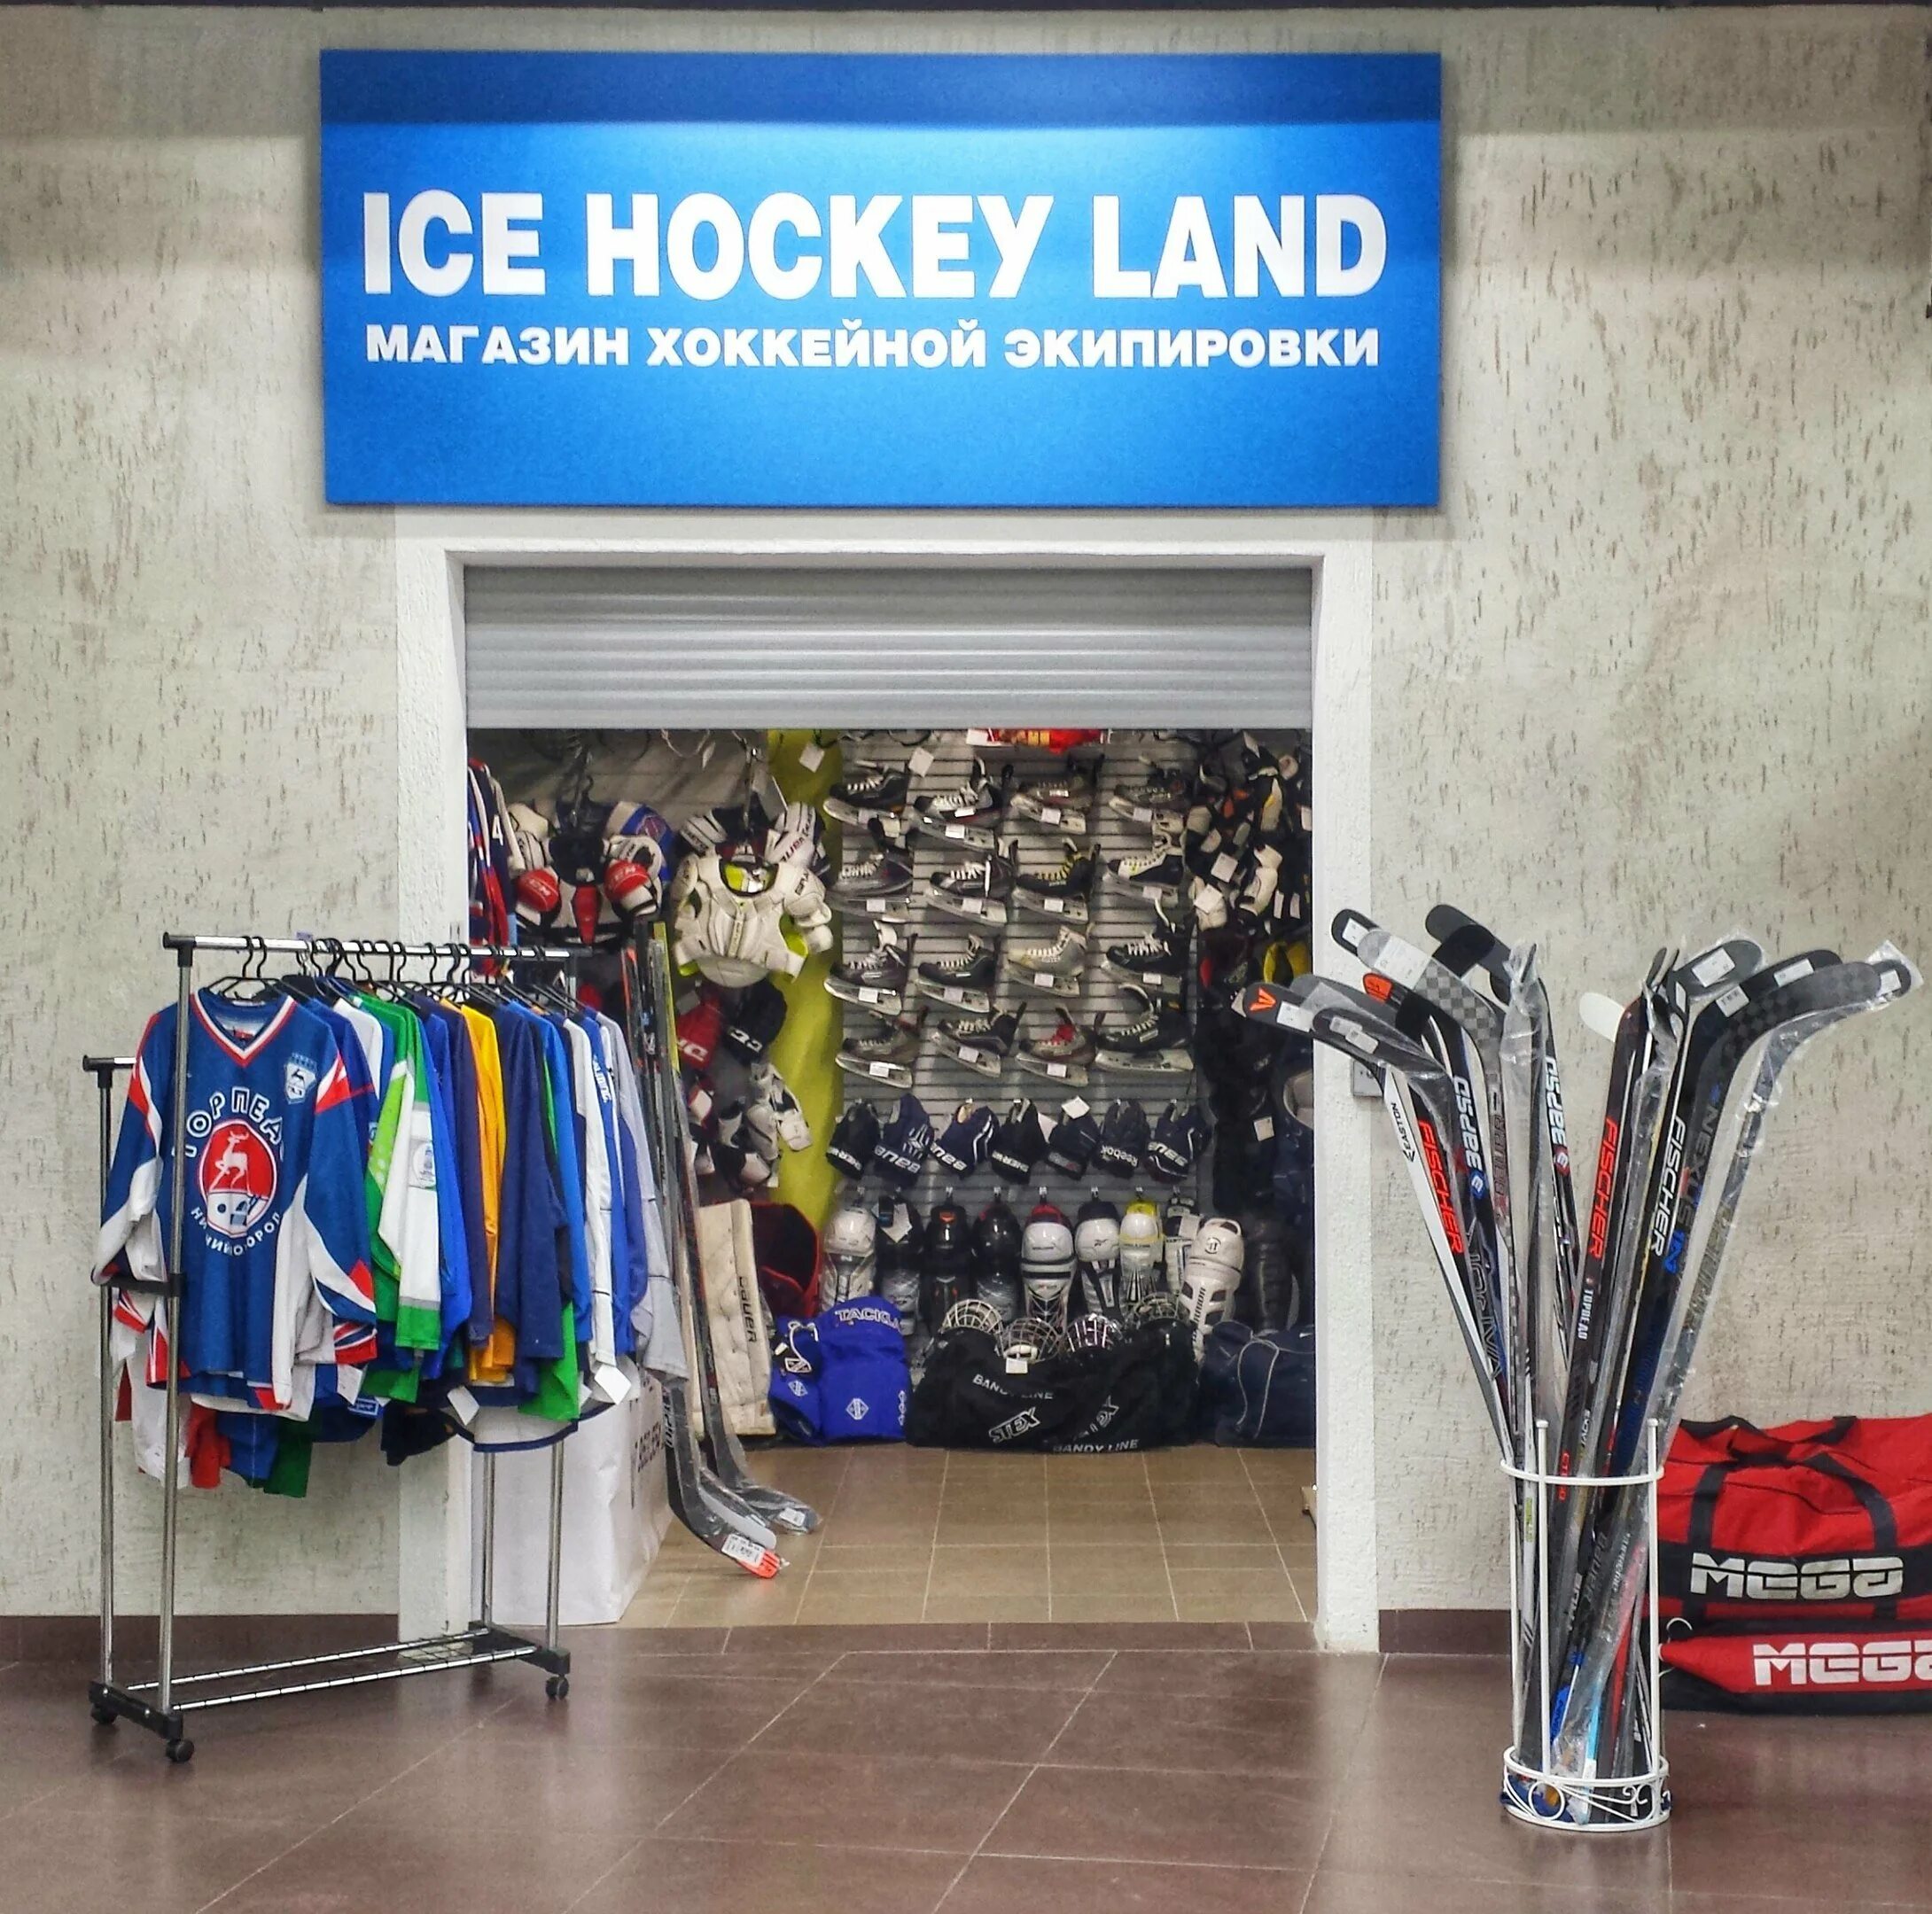 Какие магазины есть в нижнем новгороде. Ленинский проспект 150 хоккейный магазин. Магазин спортивной экипировки. Магазин хоккейной экипировки. Магазин спортивного снаряжения.